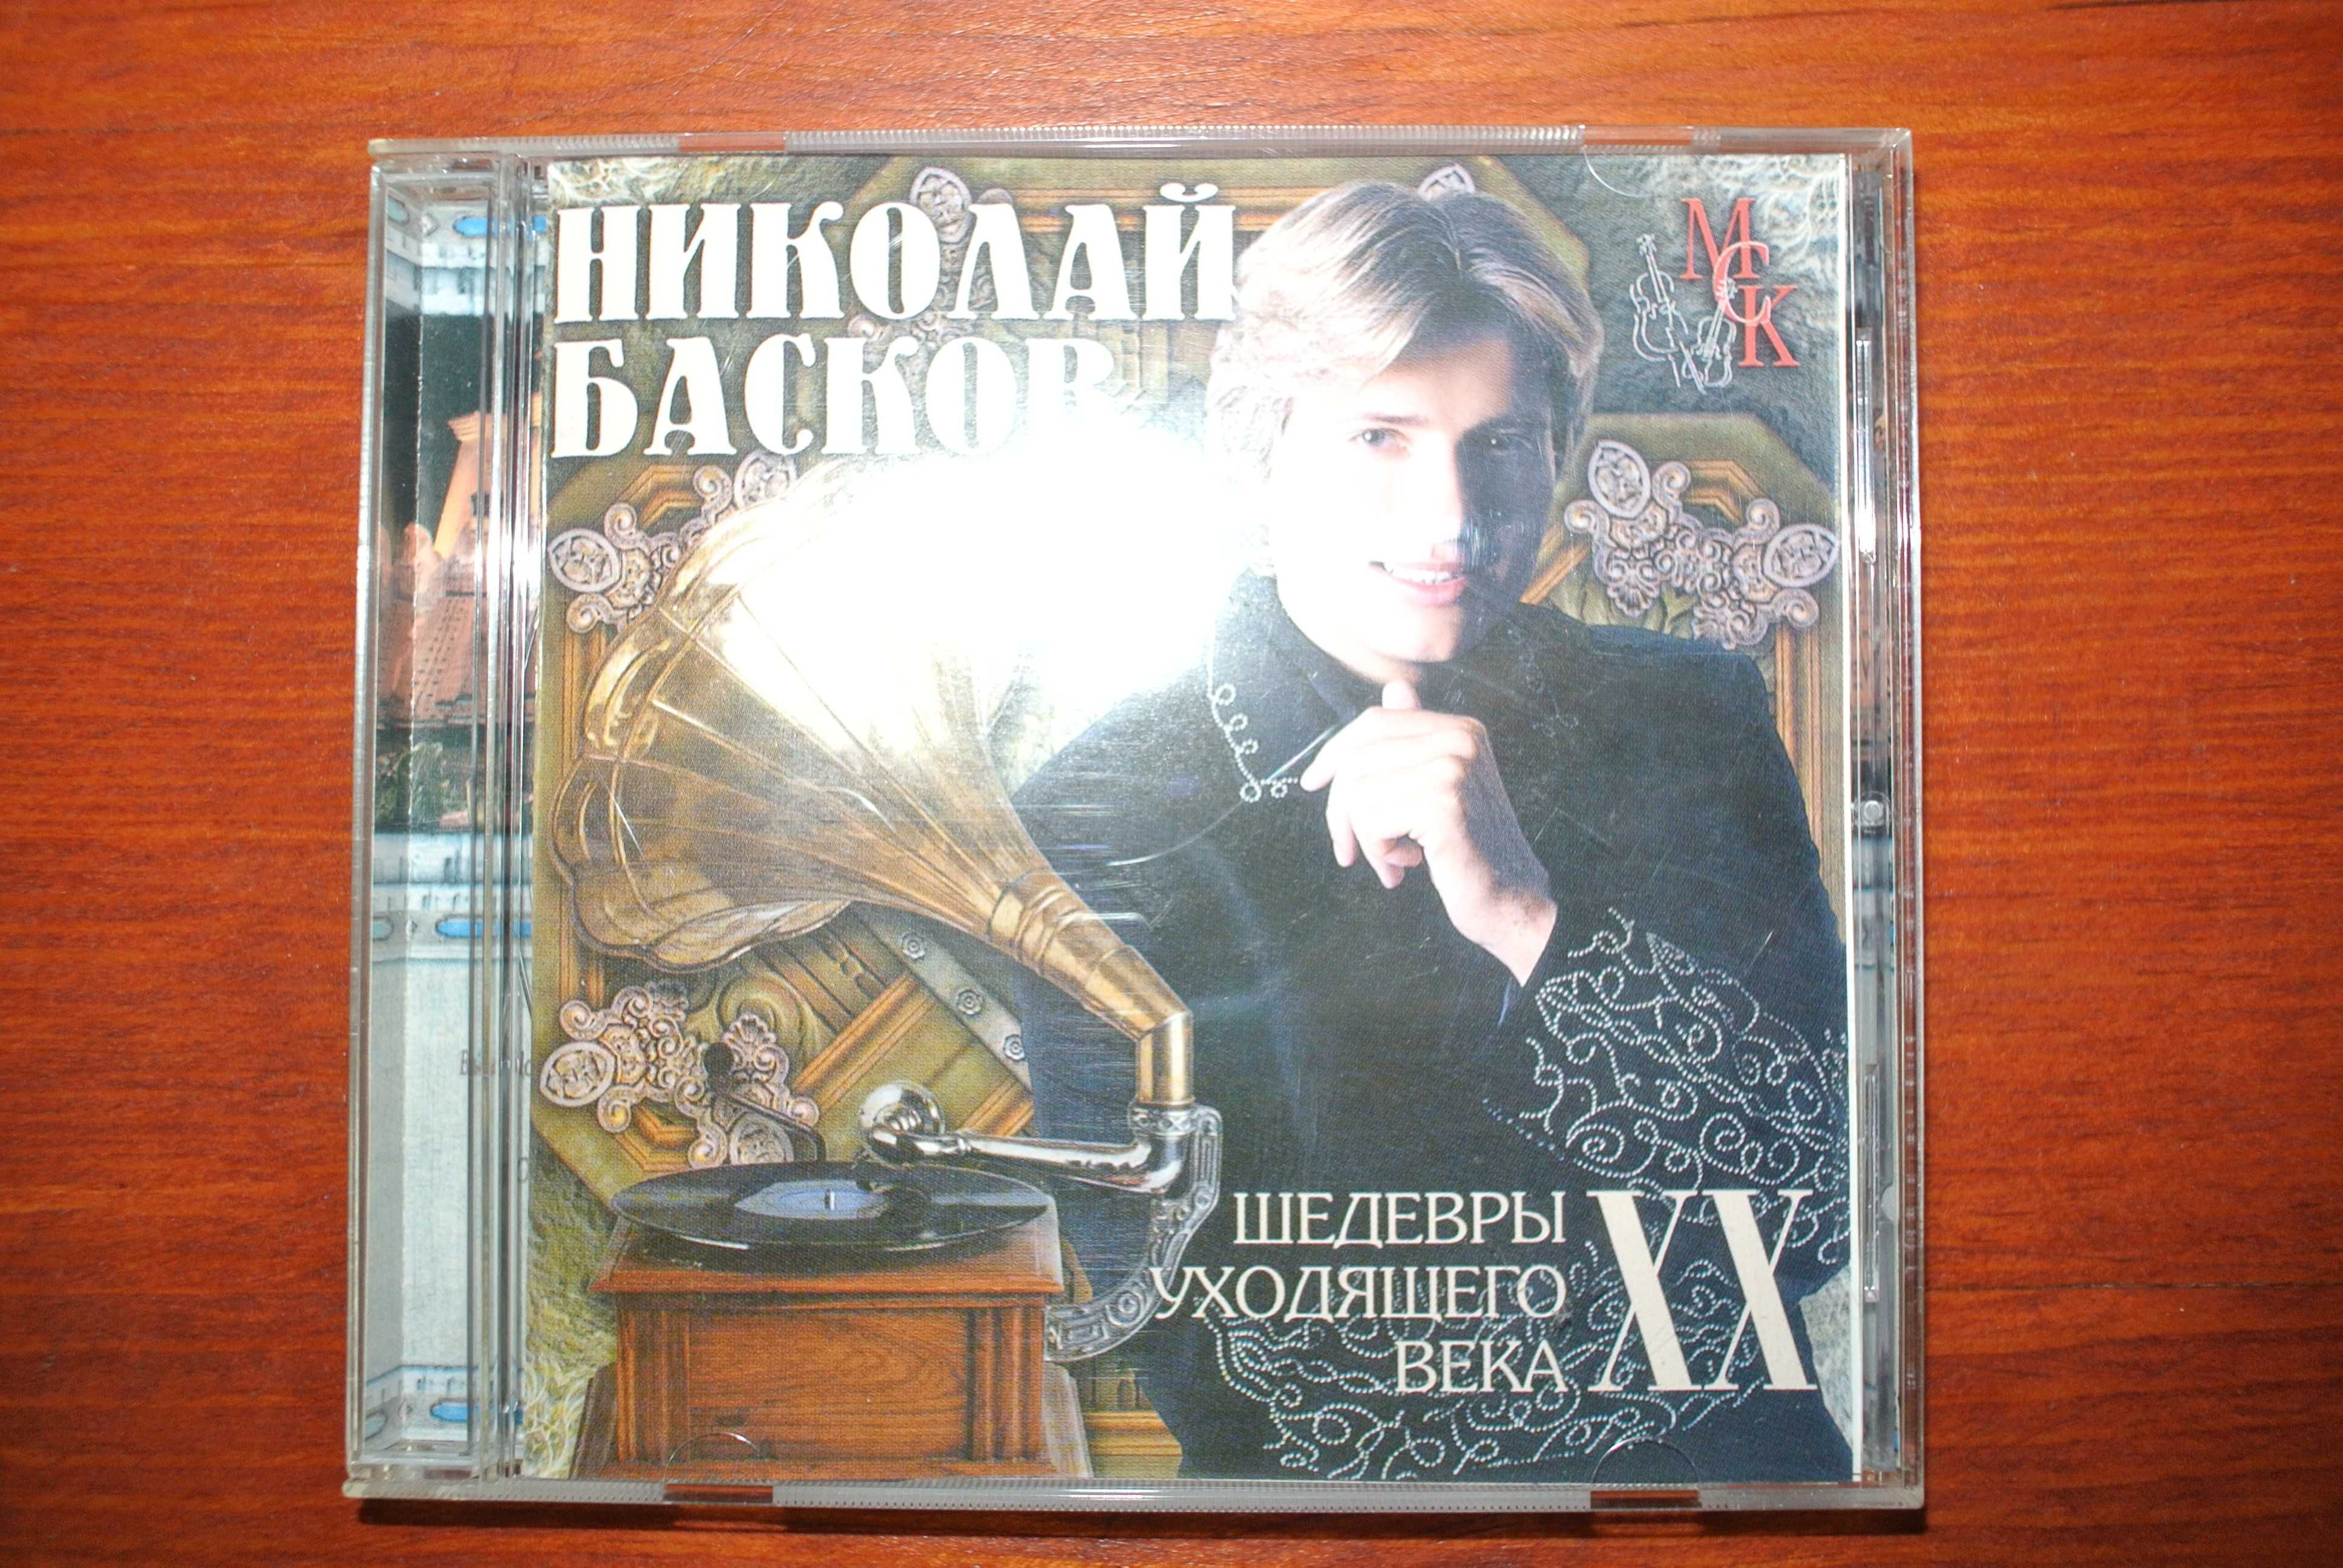 Продам диск CD Николай Басков